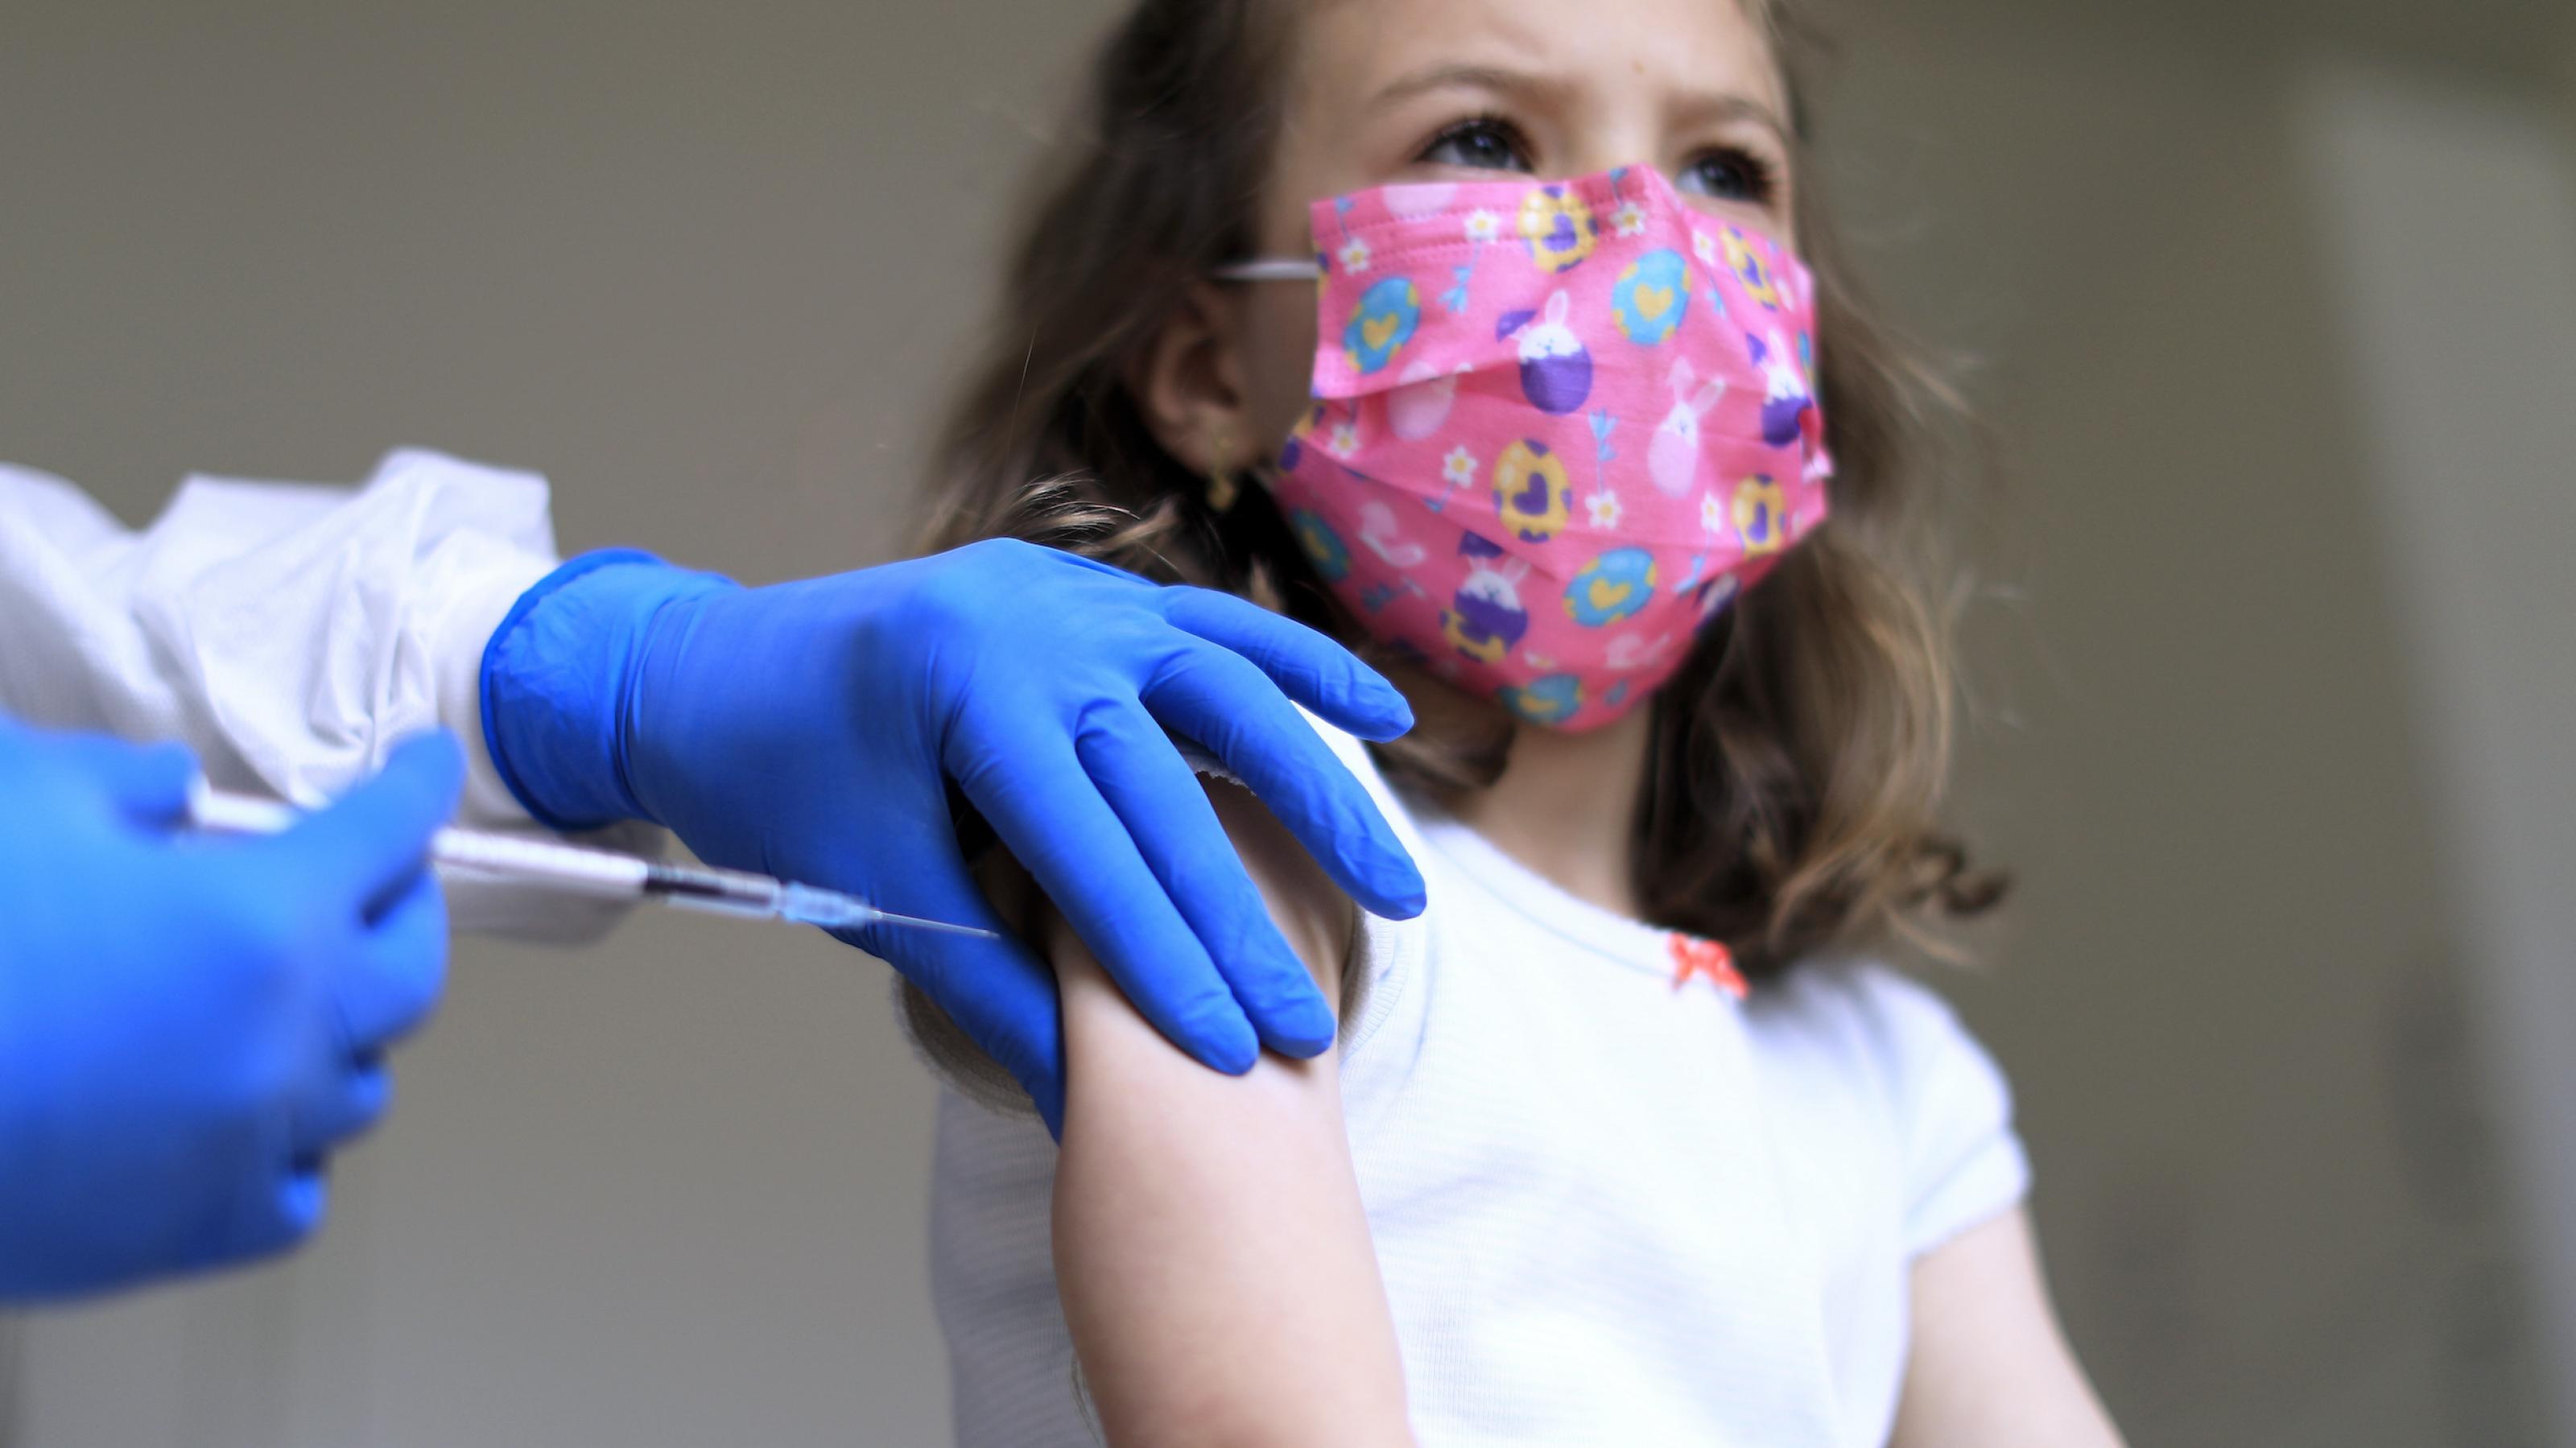 Ein Arzt führt eine Spritze mit Impfstoff an den rechten Arm eines Mädchens, das eine rosafarbene Maske trägt und in die Ferne schaut.